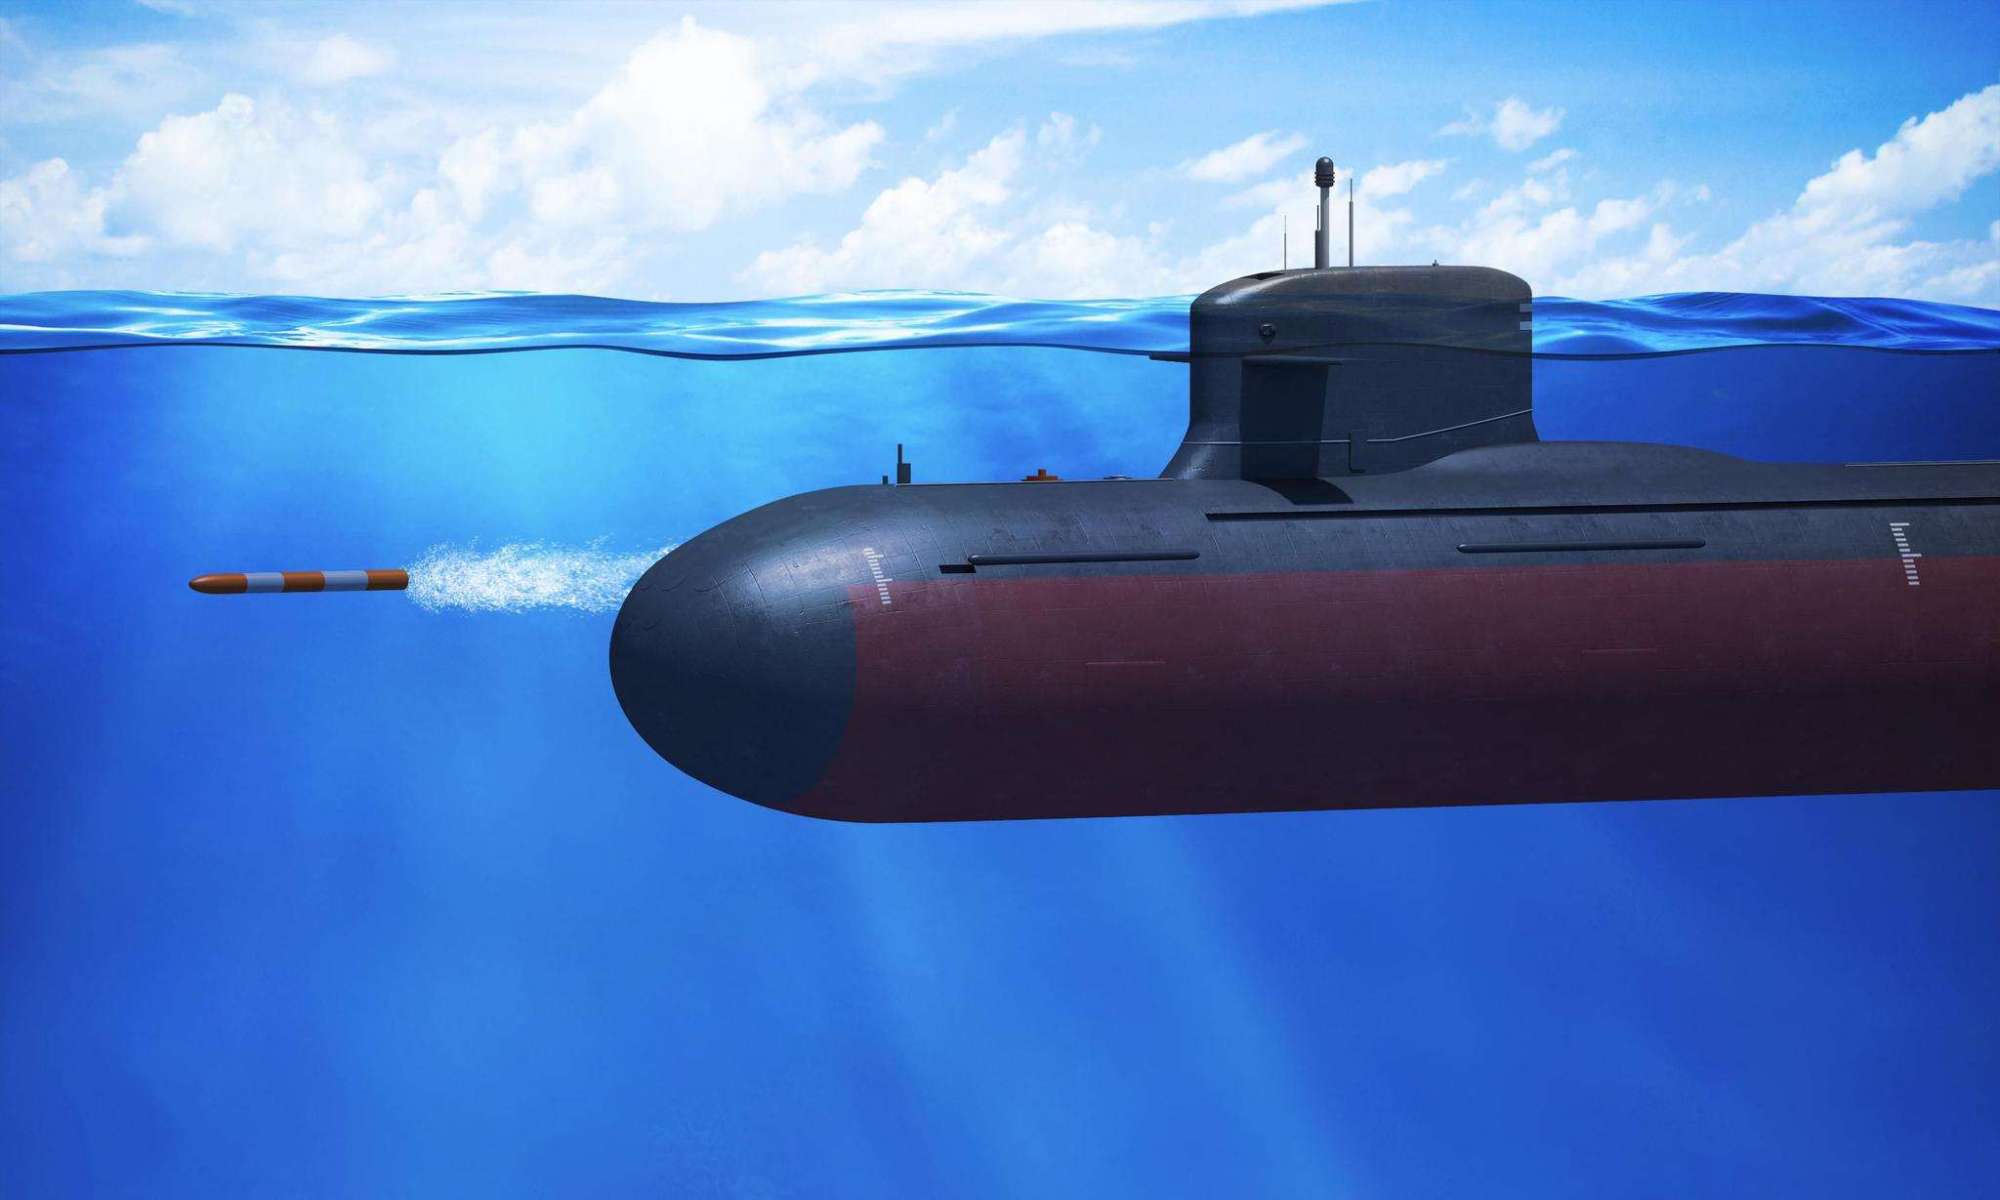 中美俄潜艇下潜深度较量俄军最深美军600米中国创下新纪录